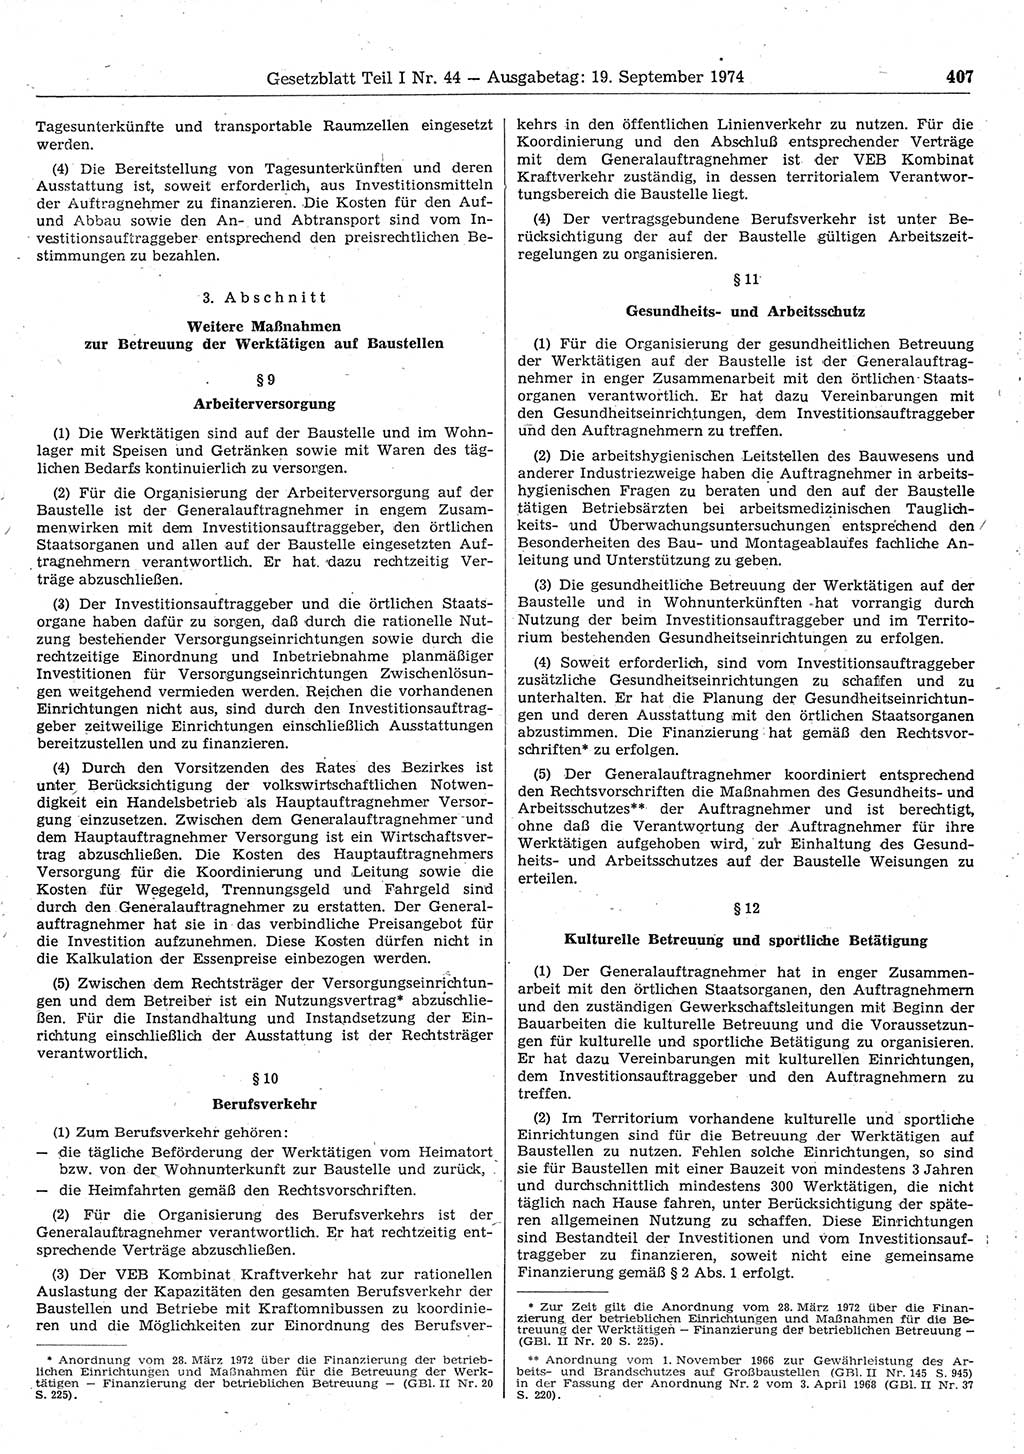 Gesetzblatt (GBl.) der Deutschen Demokratischen Republik (DDR) Teil Ⅰ 1974, Seite 407 (GBl. DDR Ⅰ 1974, S. 407)